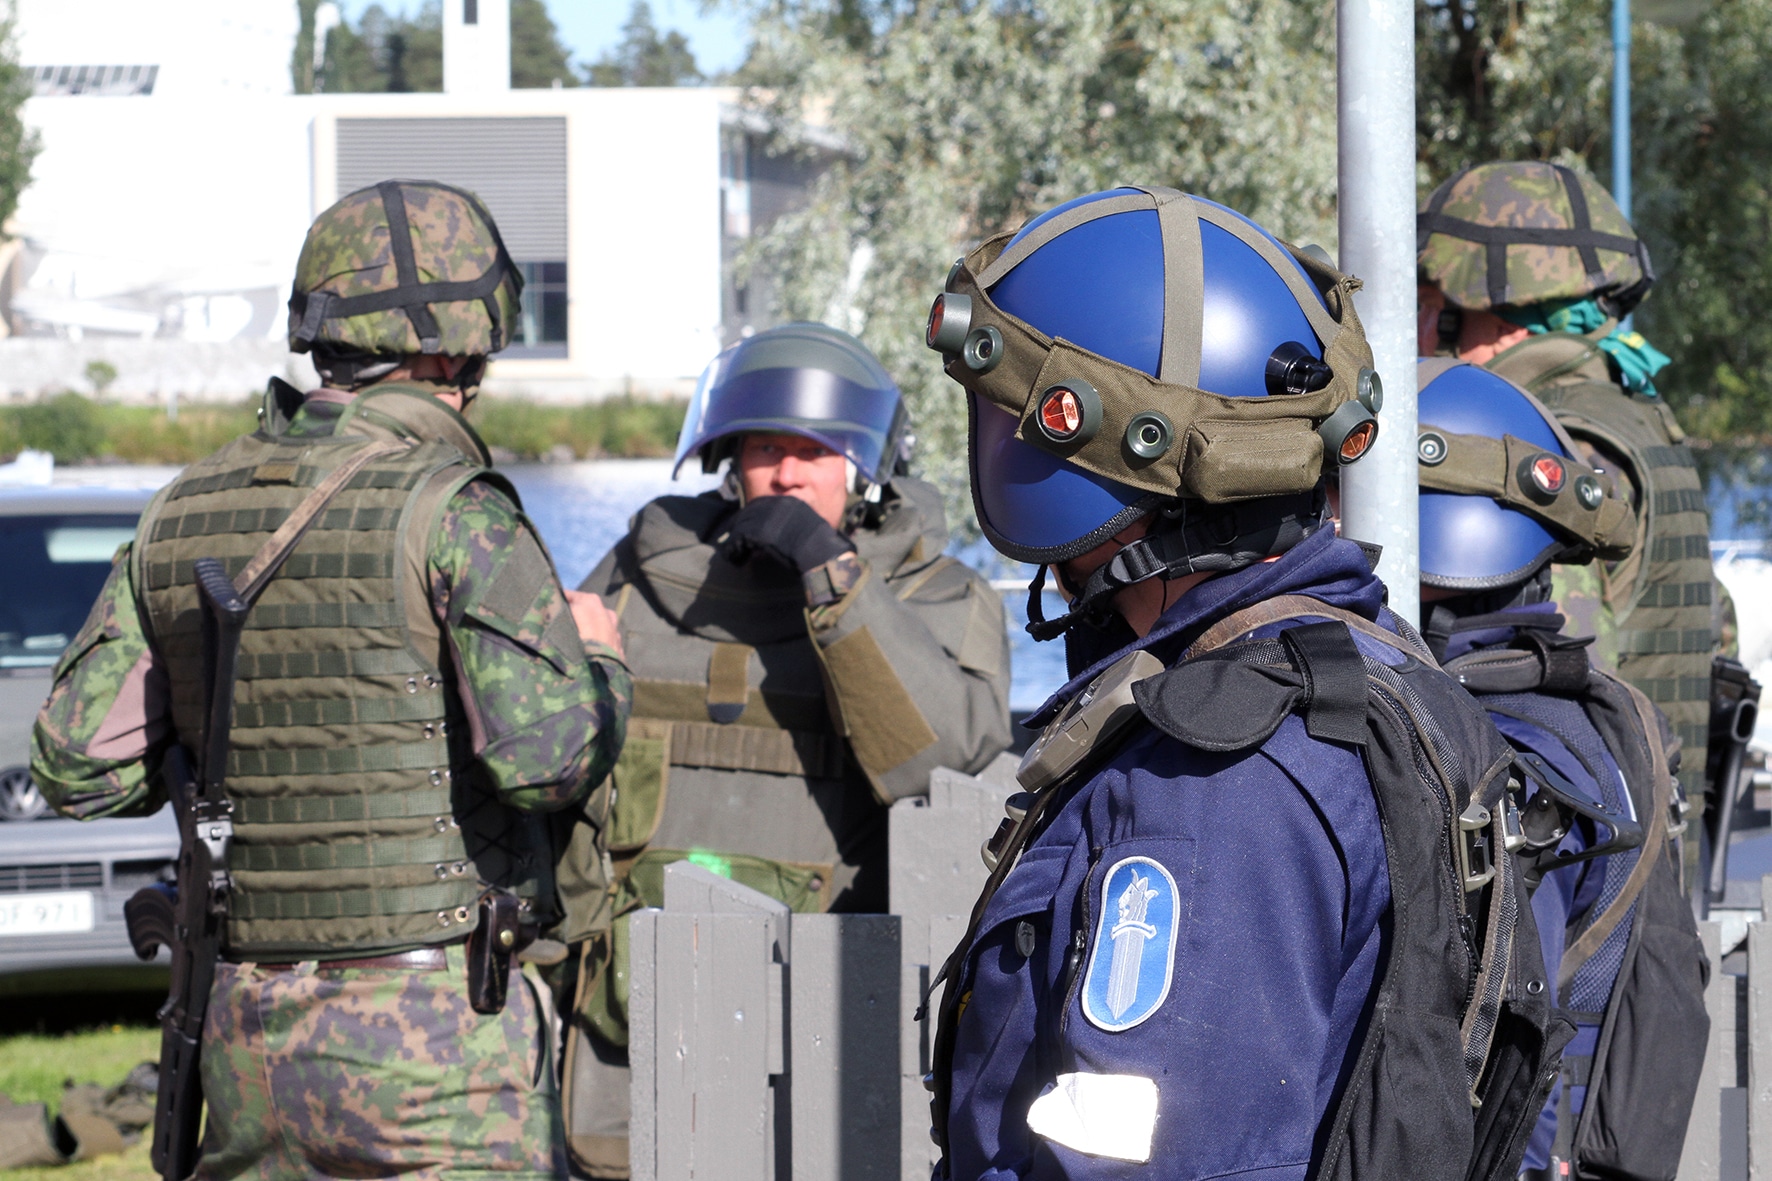 Poliisi ja sotilaita Kajaani 17 -harjoituksessa